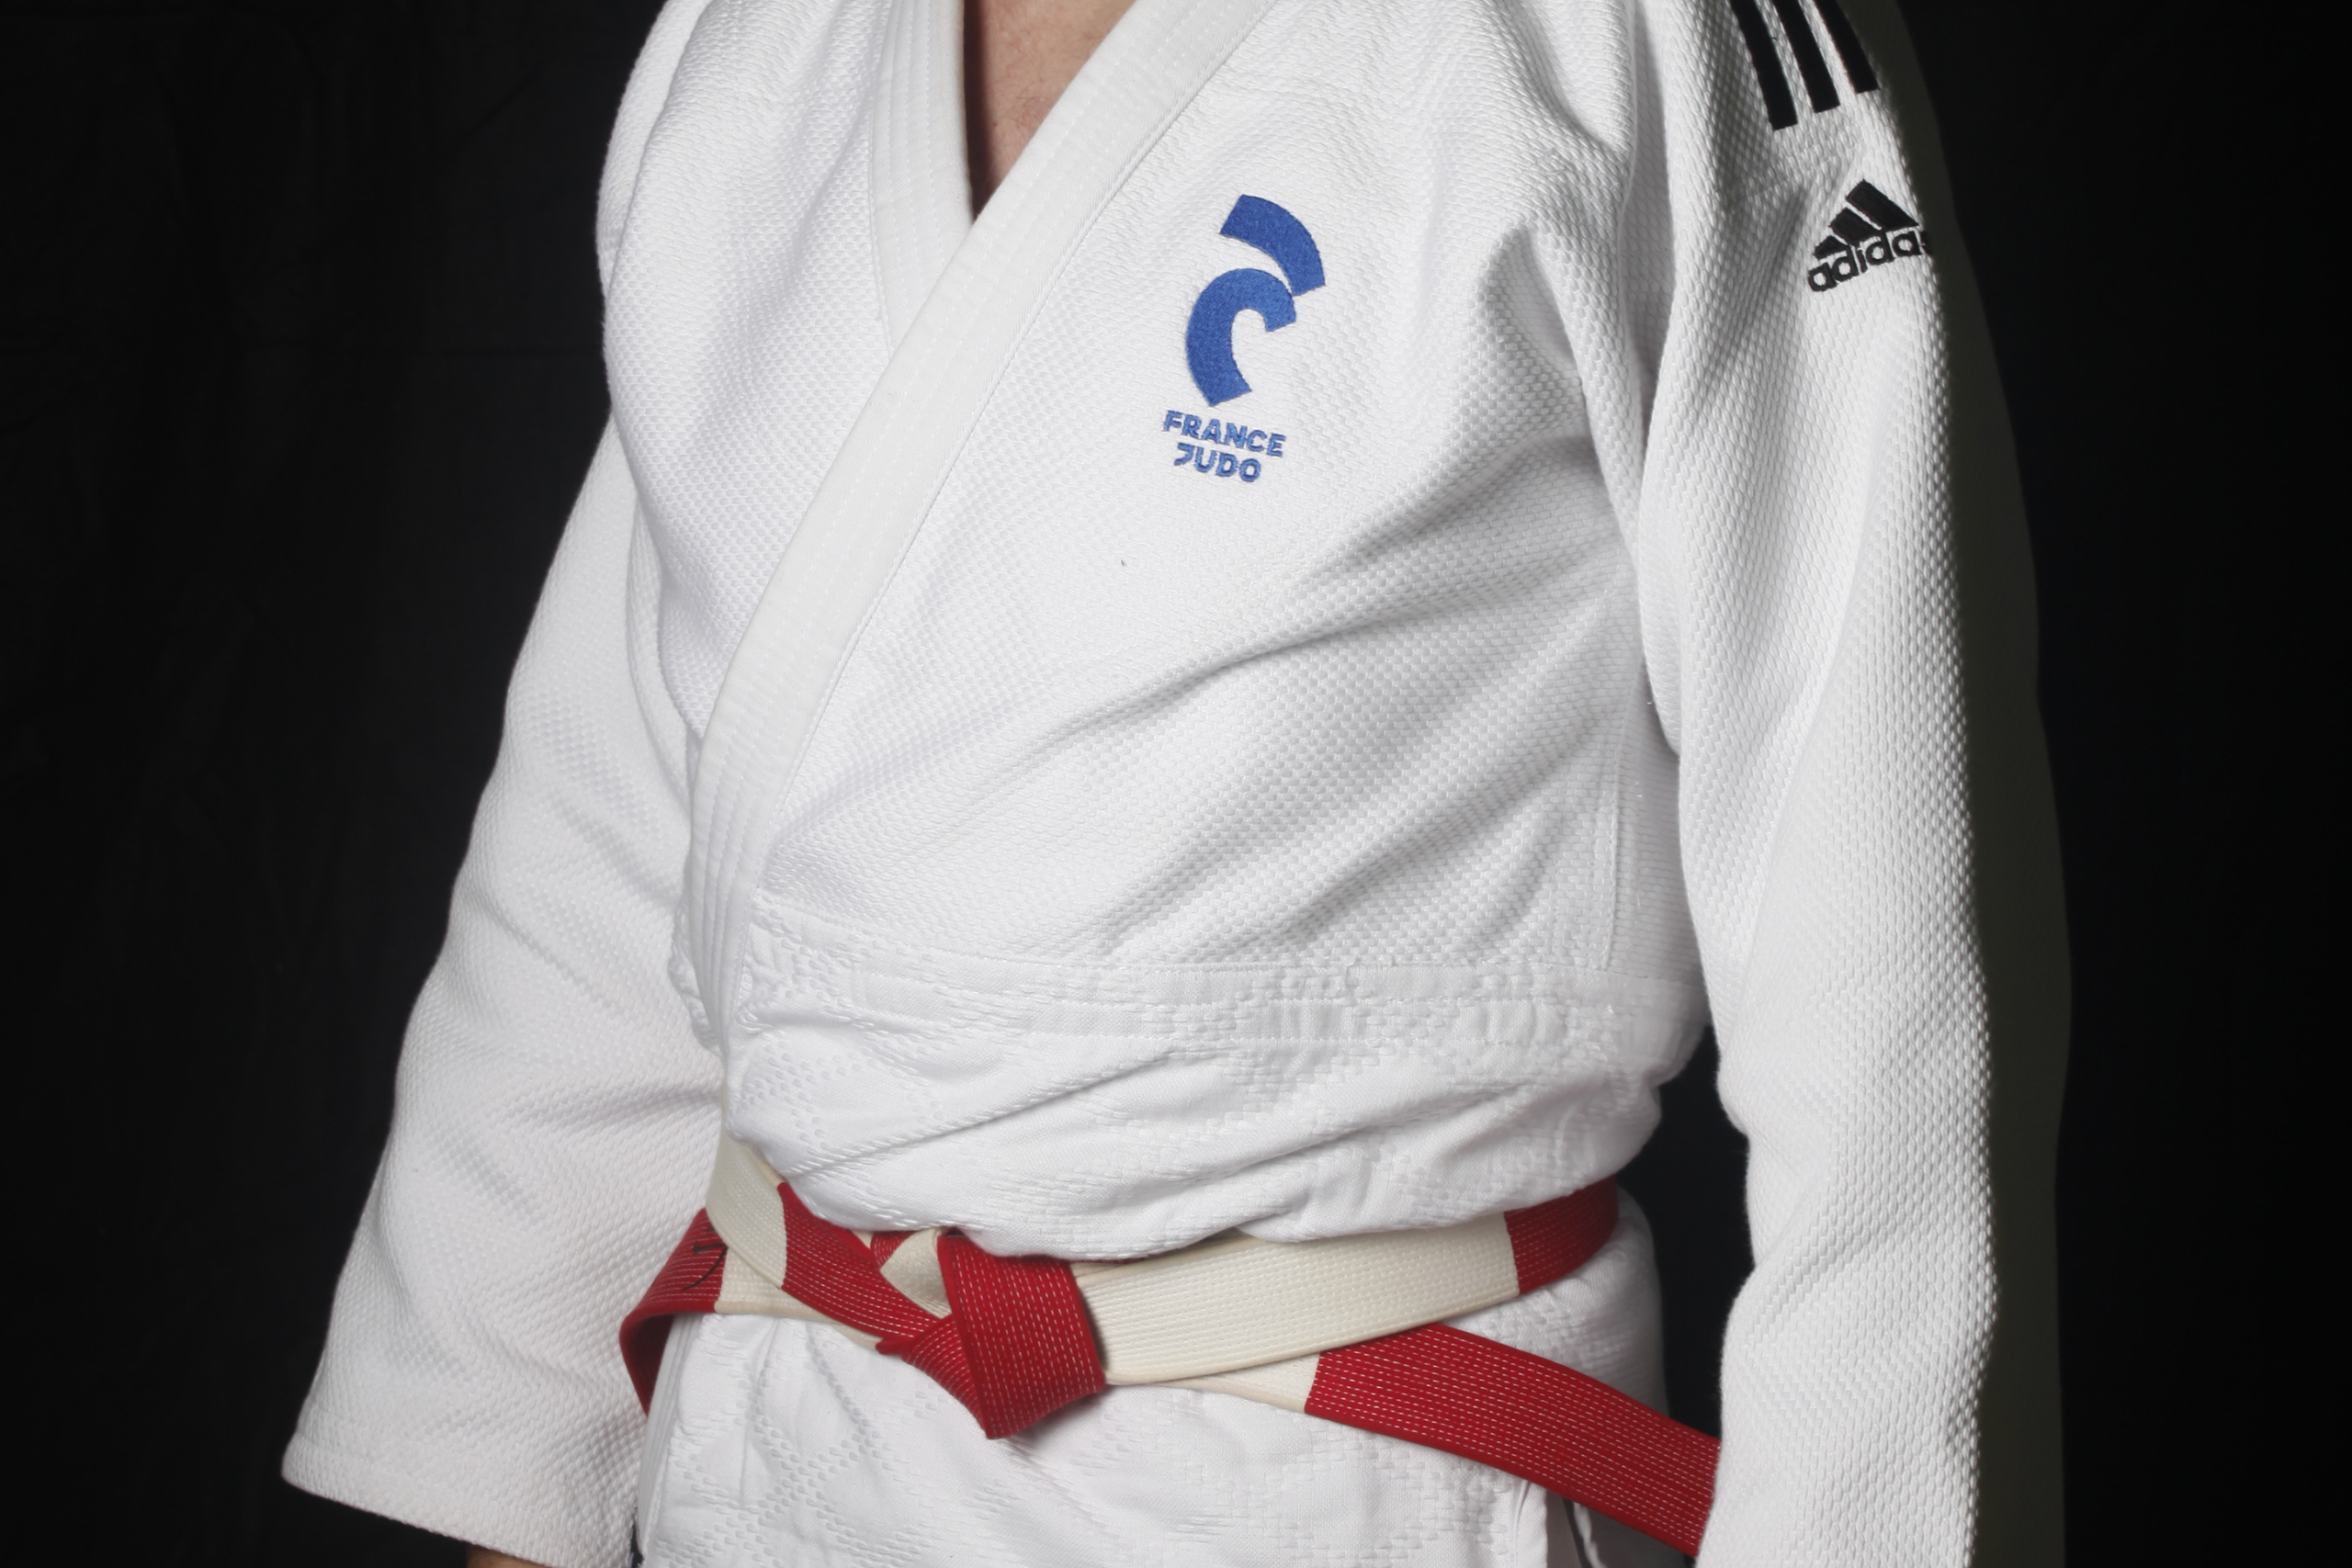 Judogi blanc, logo France Judo bleu, Adidas avec bandes noires, ceinture de haut-gradé blanche et rouge